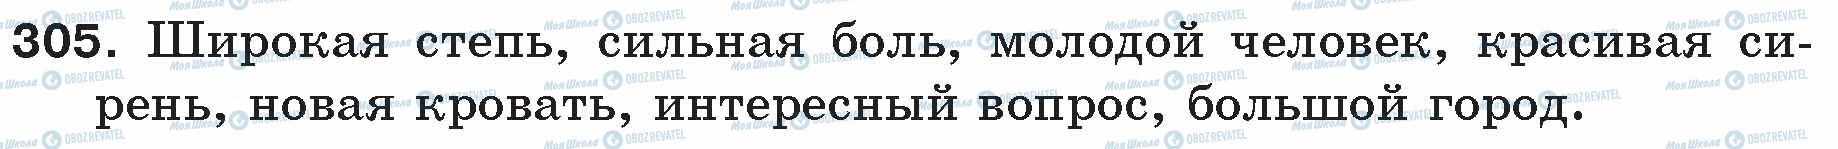 ГДЗ Російська мова 5 клас сторінка 305